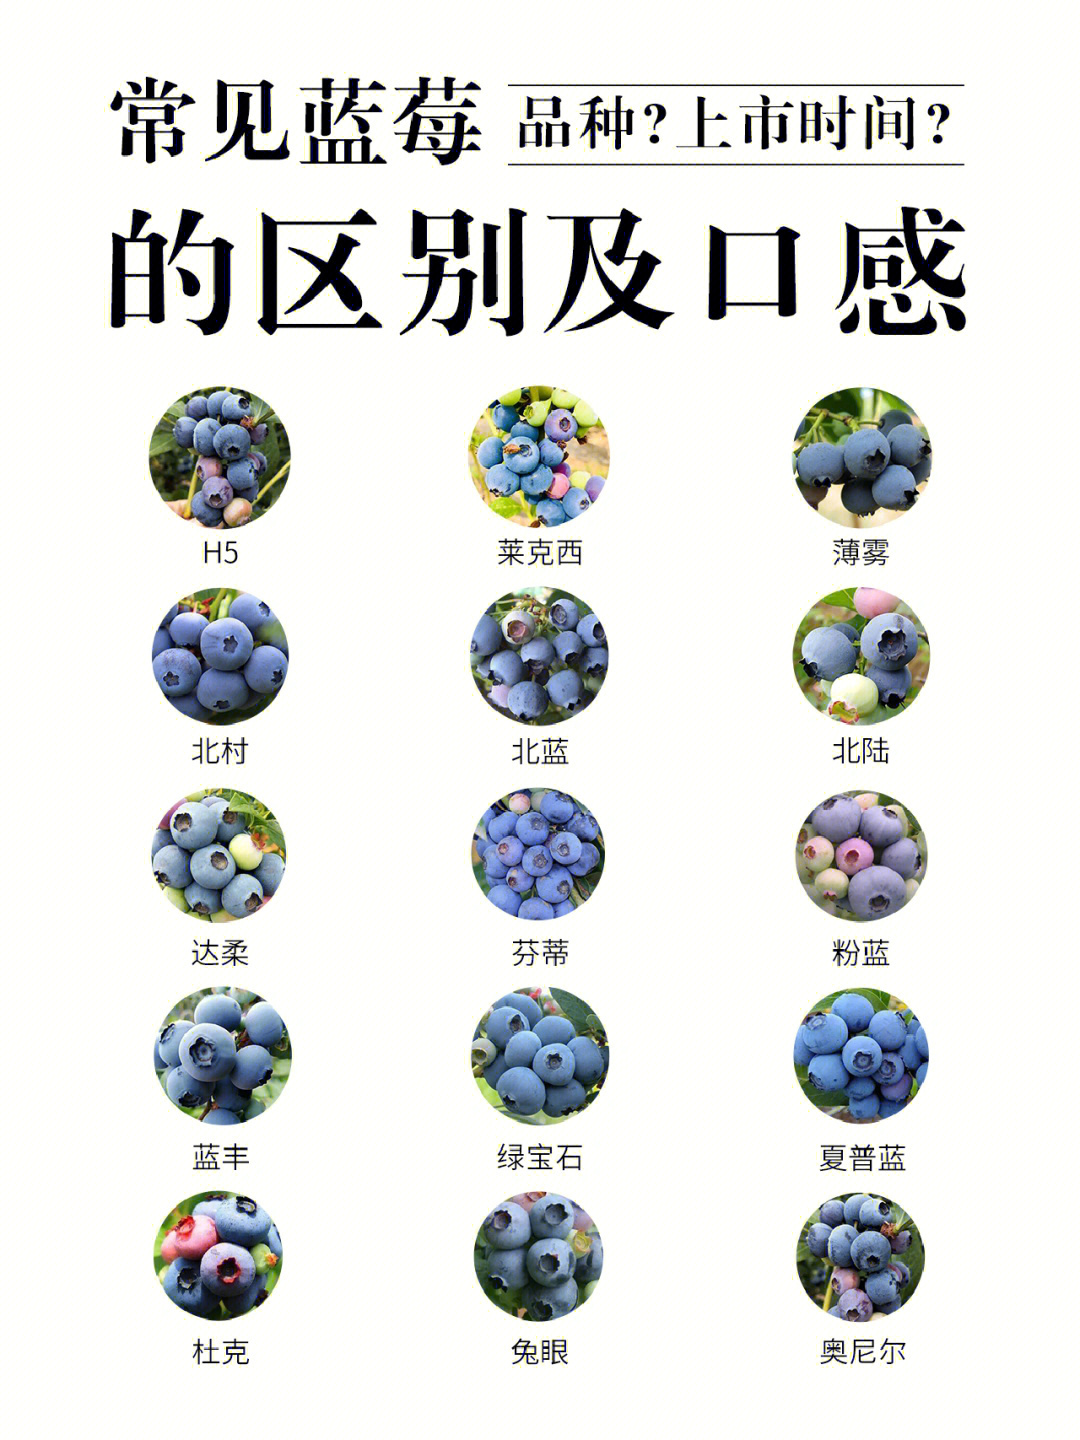 大果蓝金蓝莓品种特点图片